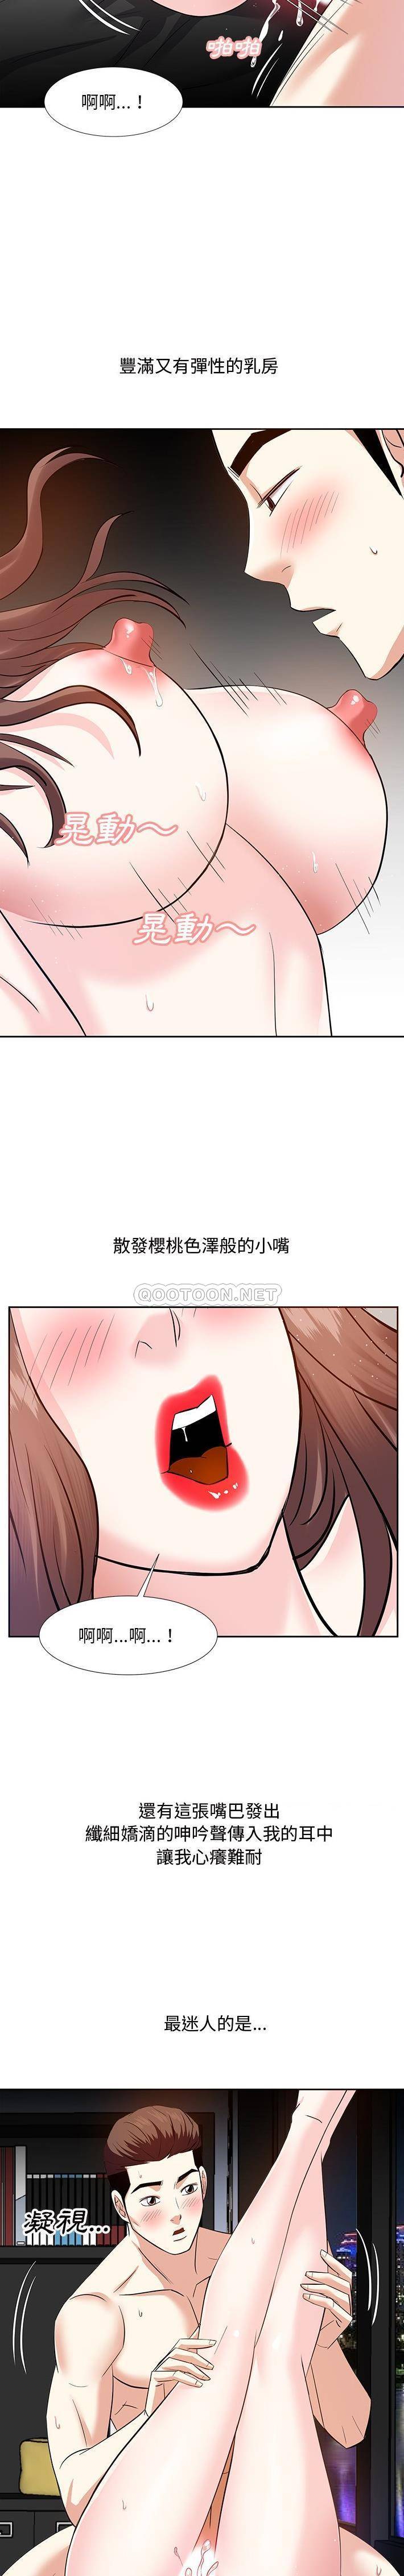 韩国污漫画 甜心幹爹 第11话 8